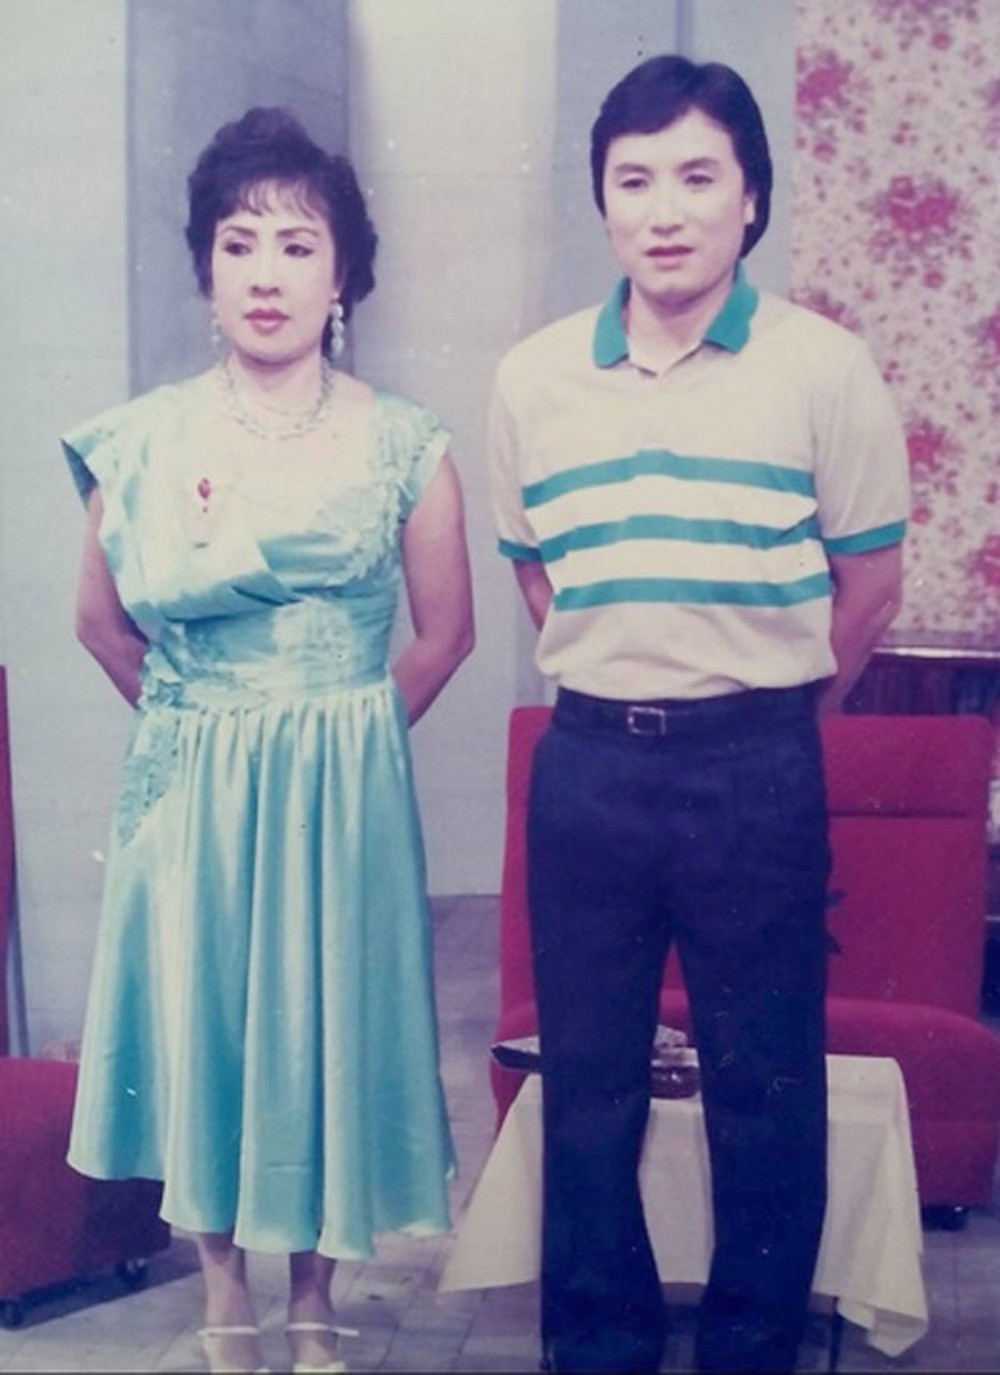 Nghệ sĩ Minh Vương - Lệ Thuỷ được mệnh danh là "cặp đôi vàng của làng cải lương".